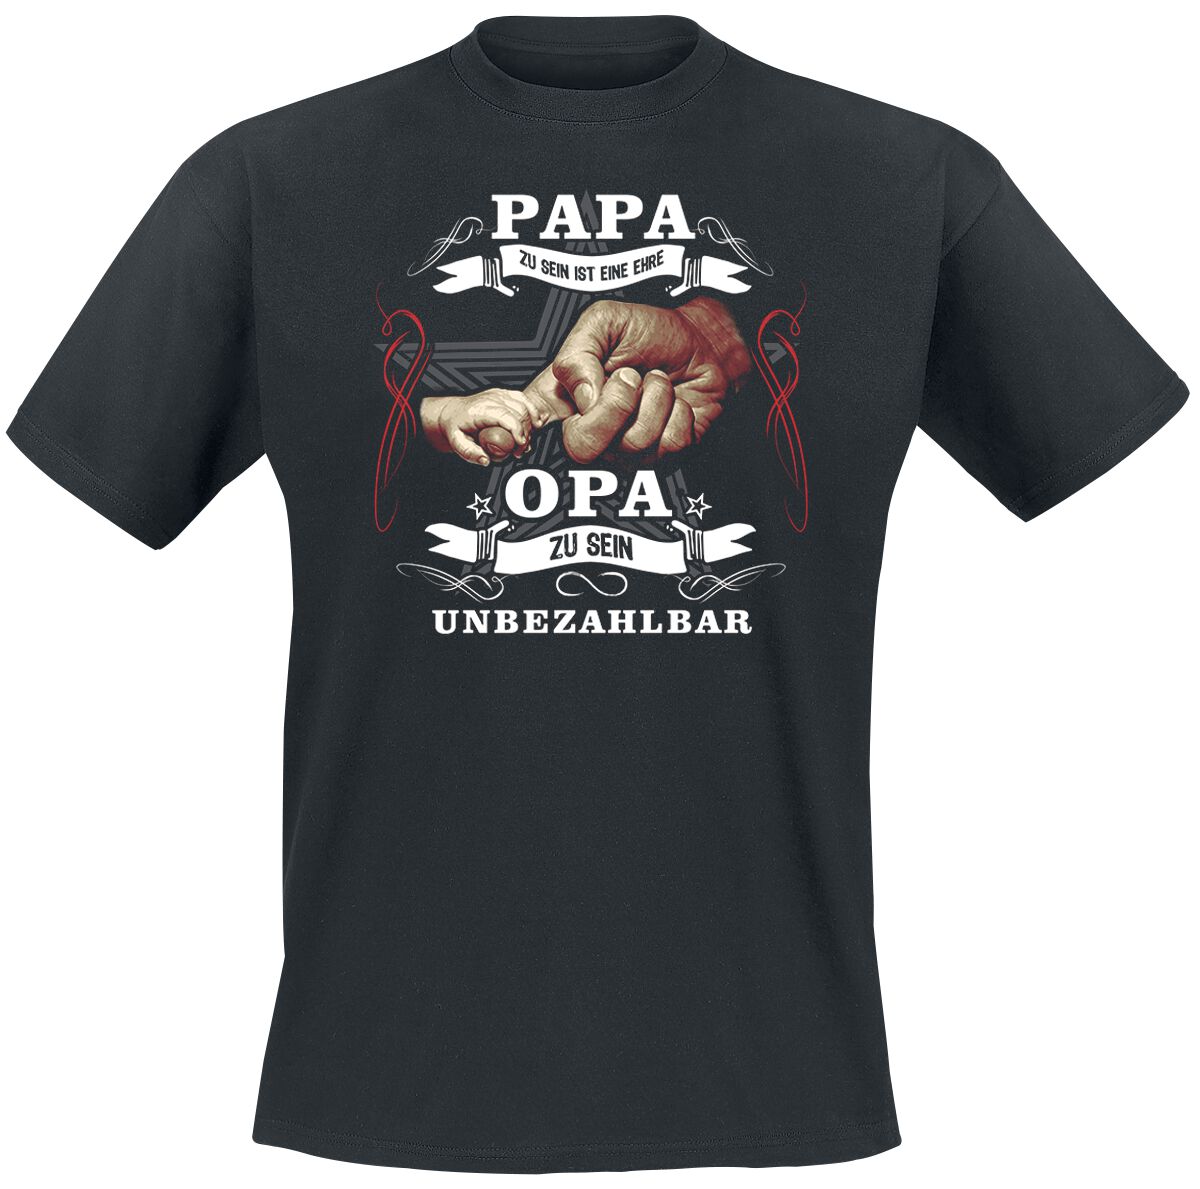 Familie & Freunde T-Shirt - Papa zu sein ist eine Ehre - XXL bis 5XL - für Männer - Größe 5XL - schwarz